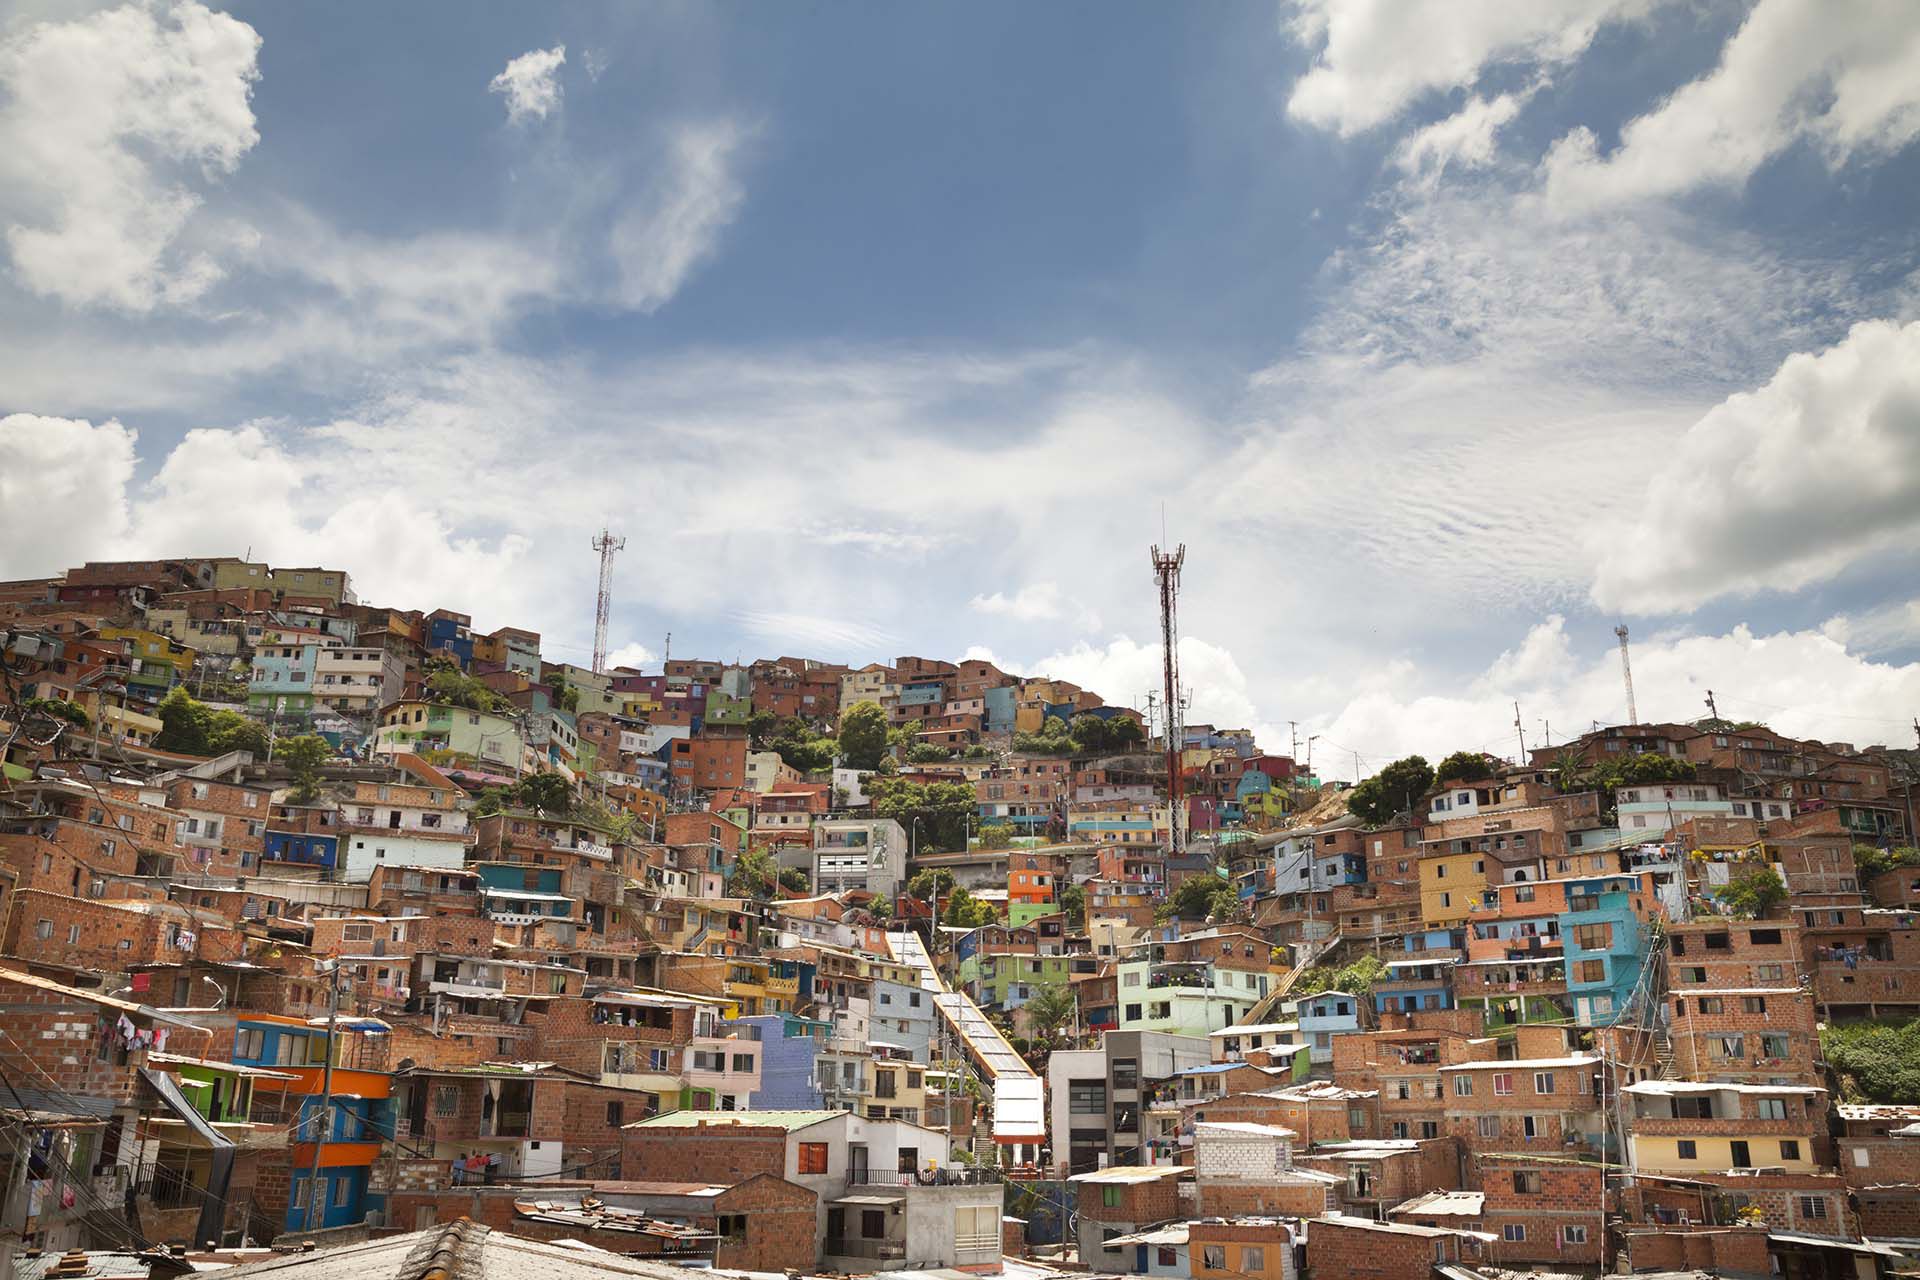 Desde hace 30 años la organización de “La Oficina” controla gran parte de la criminalidad de Medellín. / (Medellin Convention and Visitors Bureau)